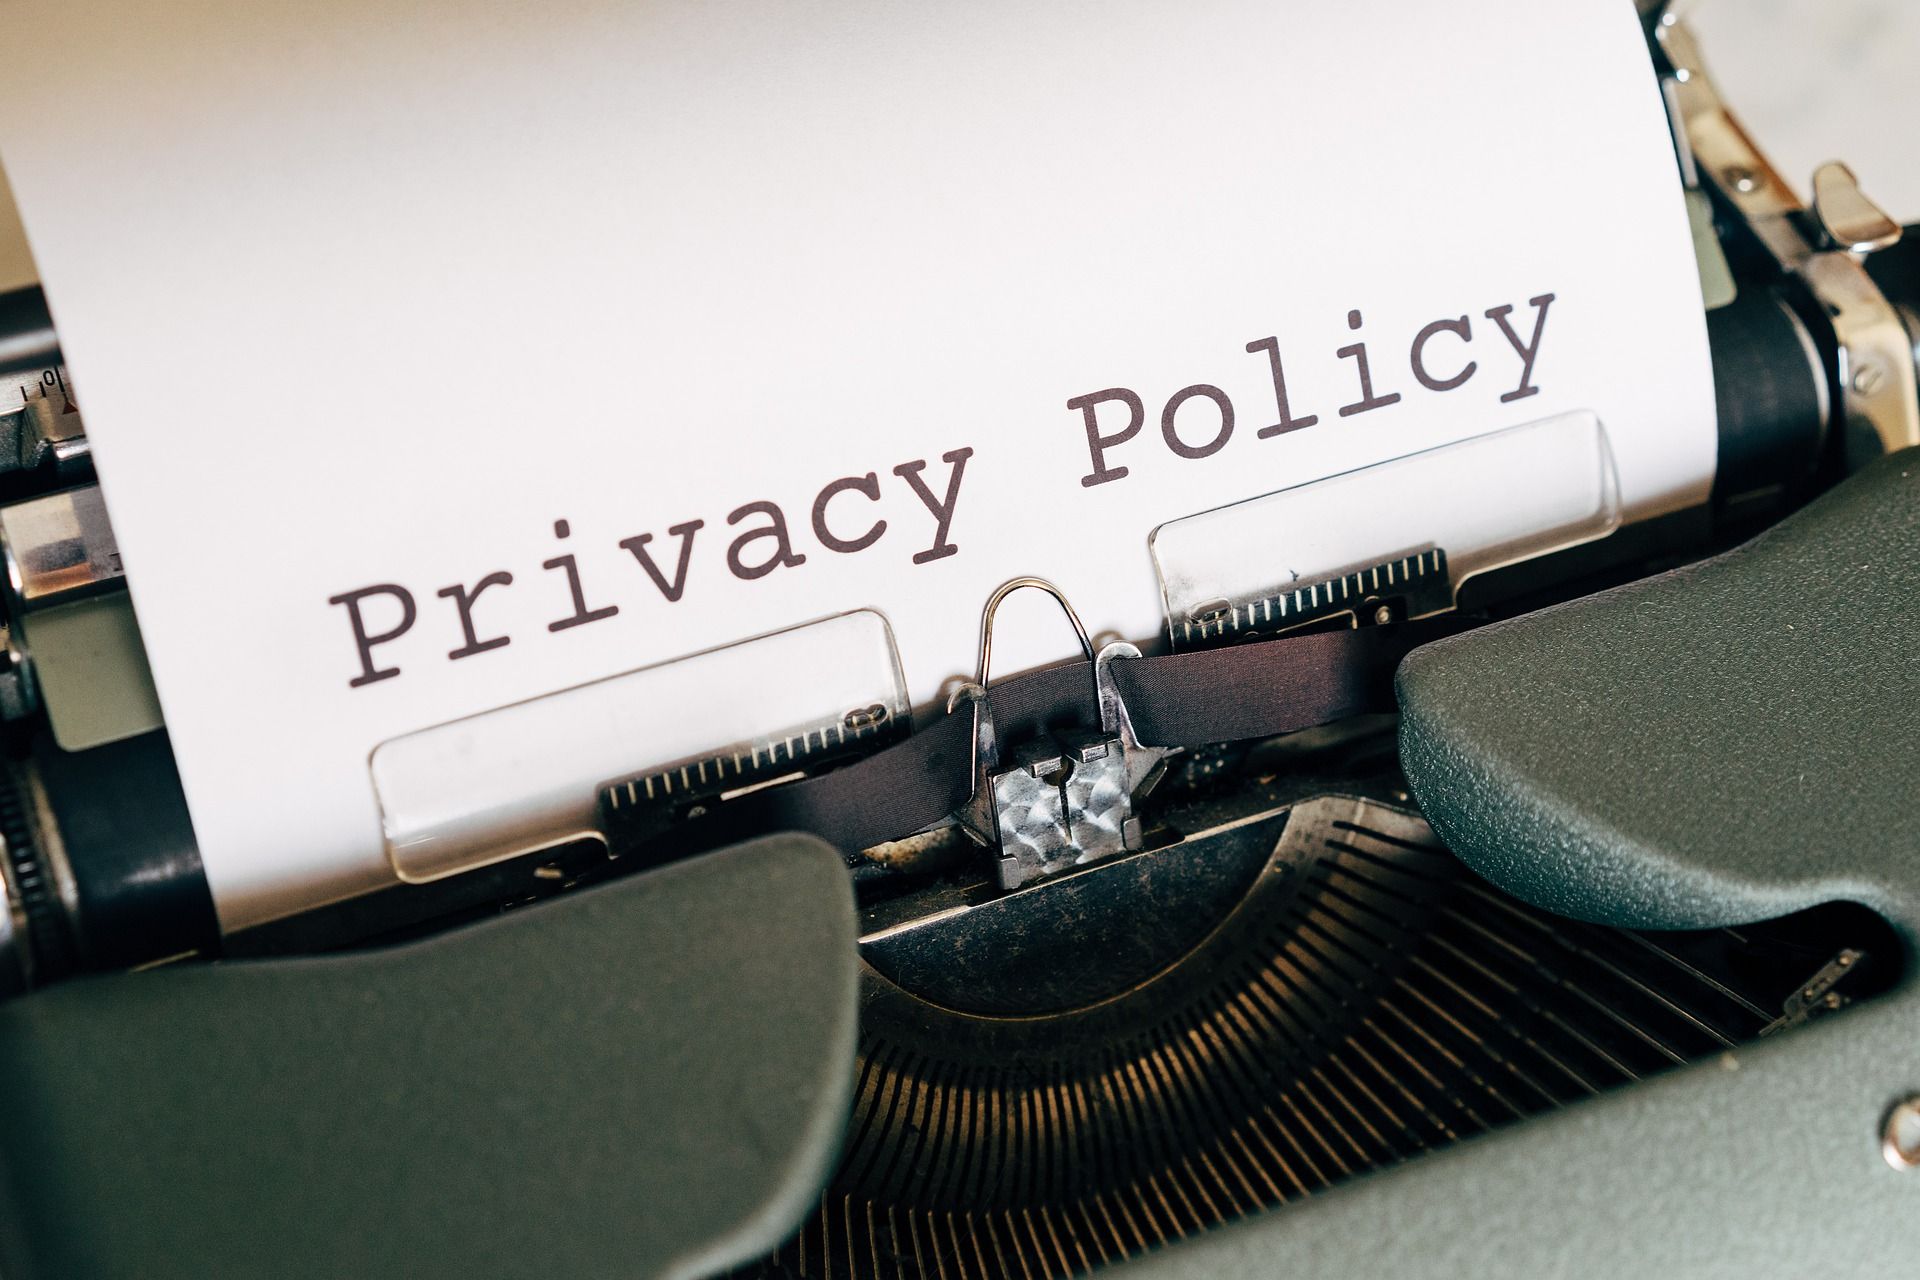 En los metaversos, por el momento nadie ha precisado qué medidas se van a adoptar para salvaguardar la privacidad y la seguridad de la información de sus usuarios.